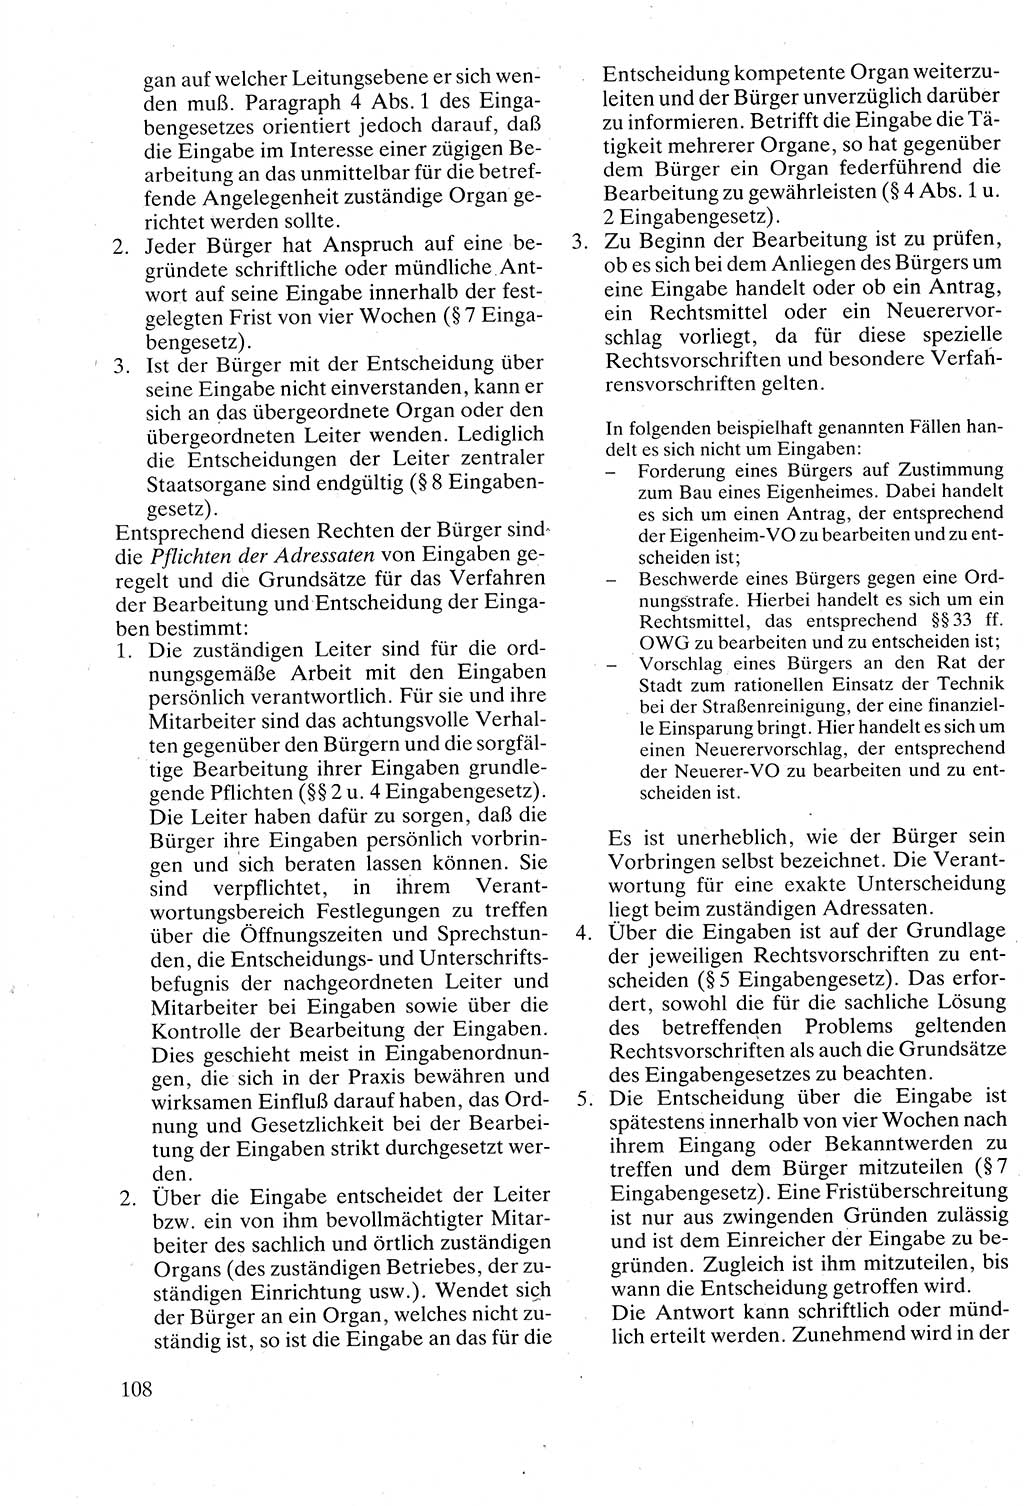 Verwaltungsrecht [Deutsche Demokratische Republik (DDR)], Lehrbuch 1988, Seite 108 (Verw.-R. DDR Lb. 1988, S. 108)